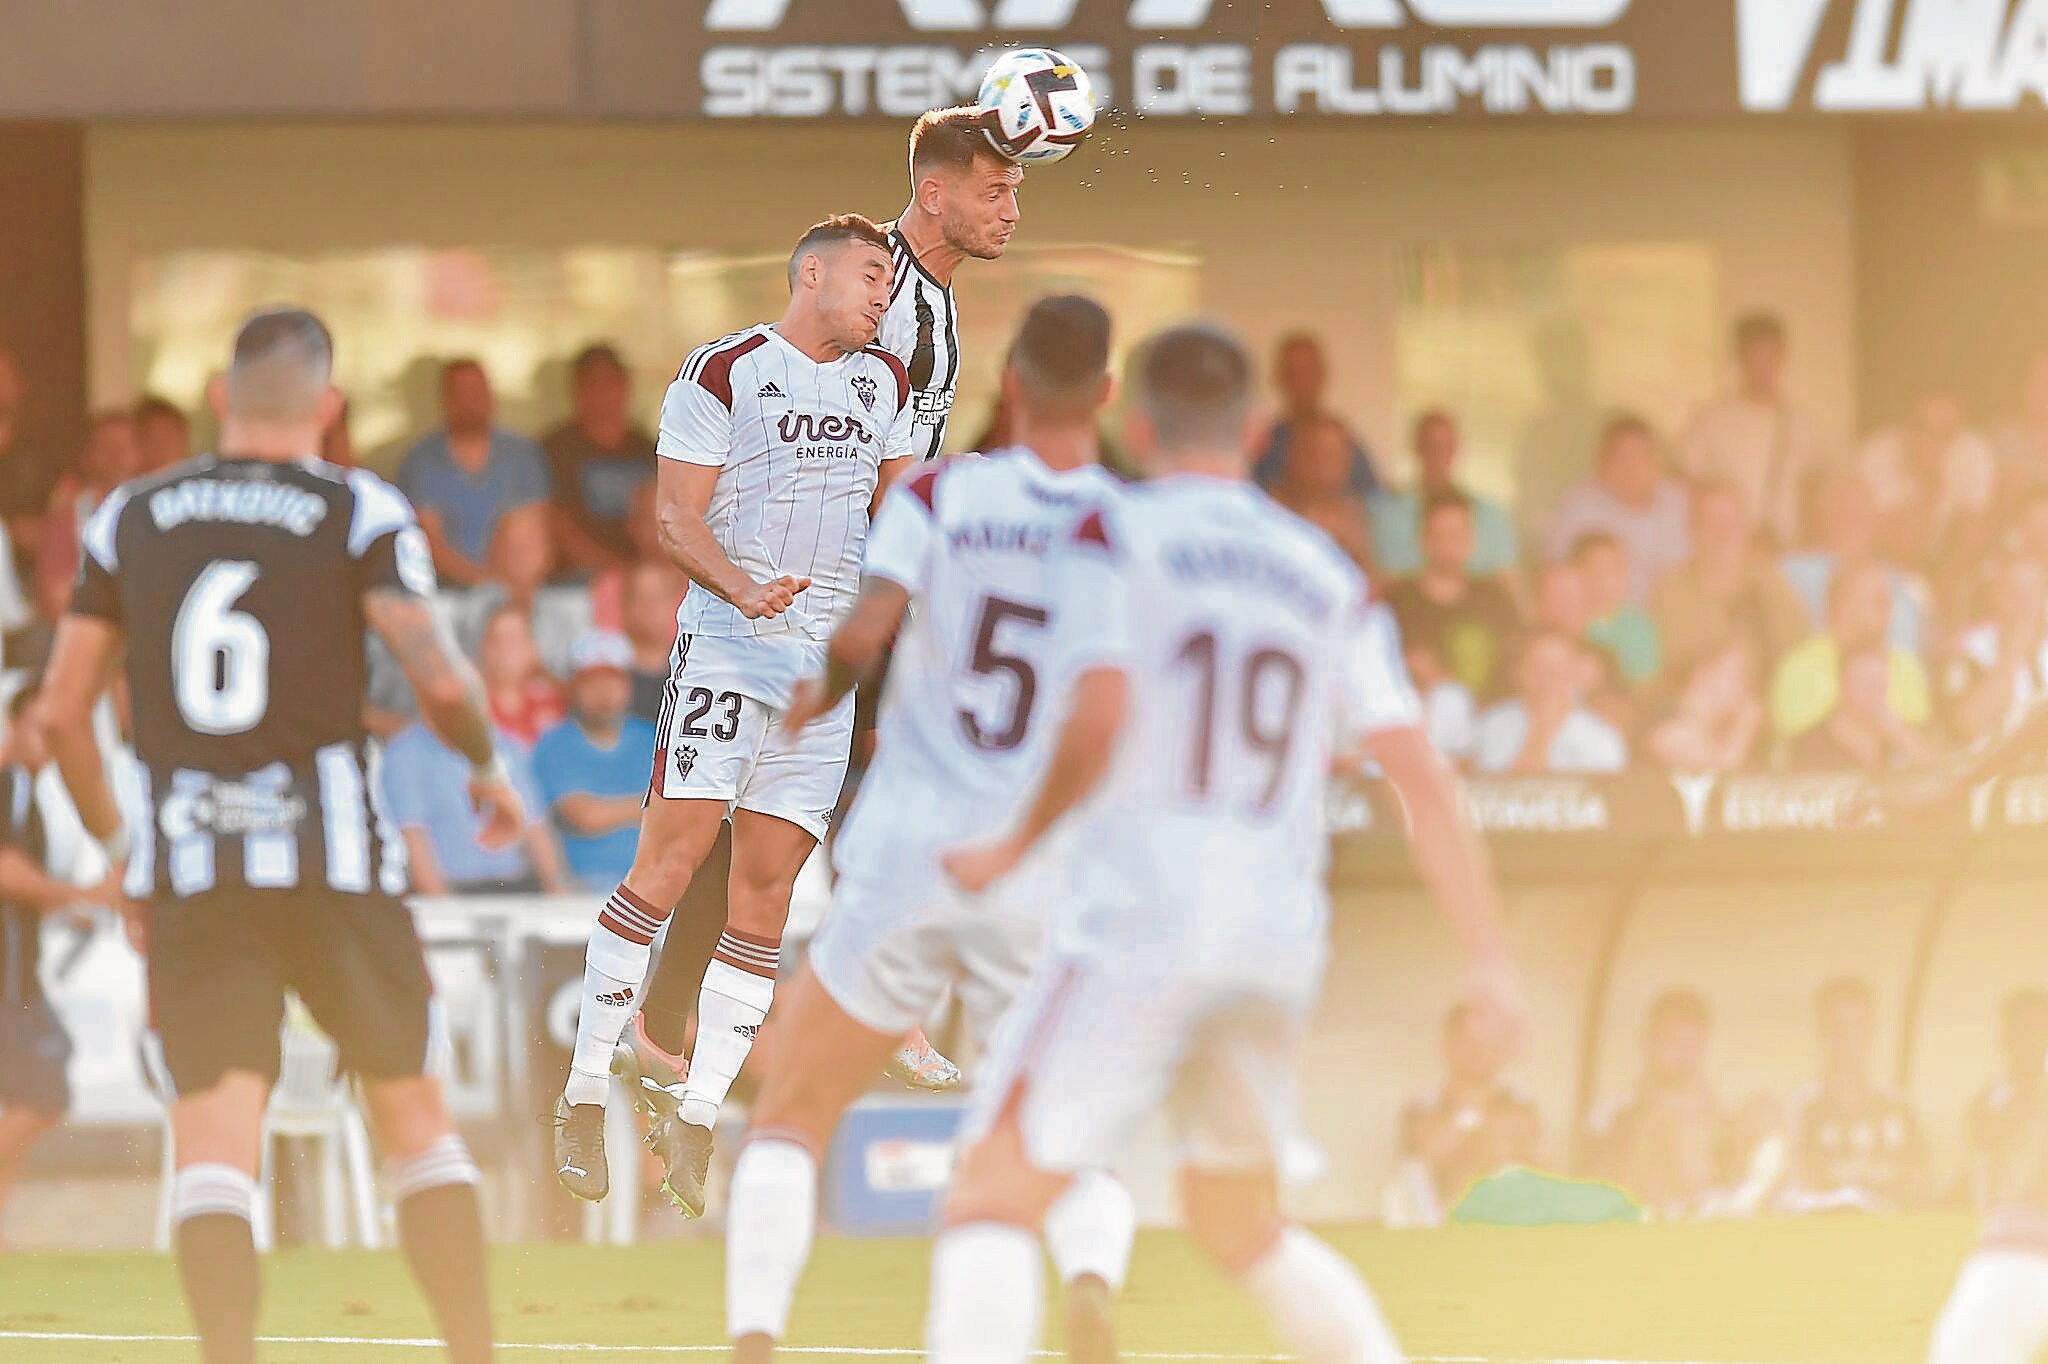 2-1: El Albacete cae en Cartagena en un partido donde rozó el empate